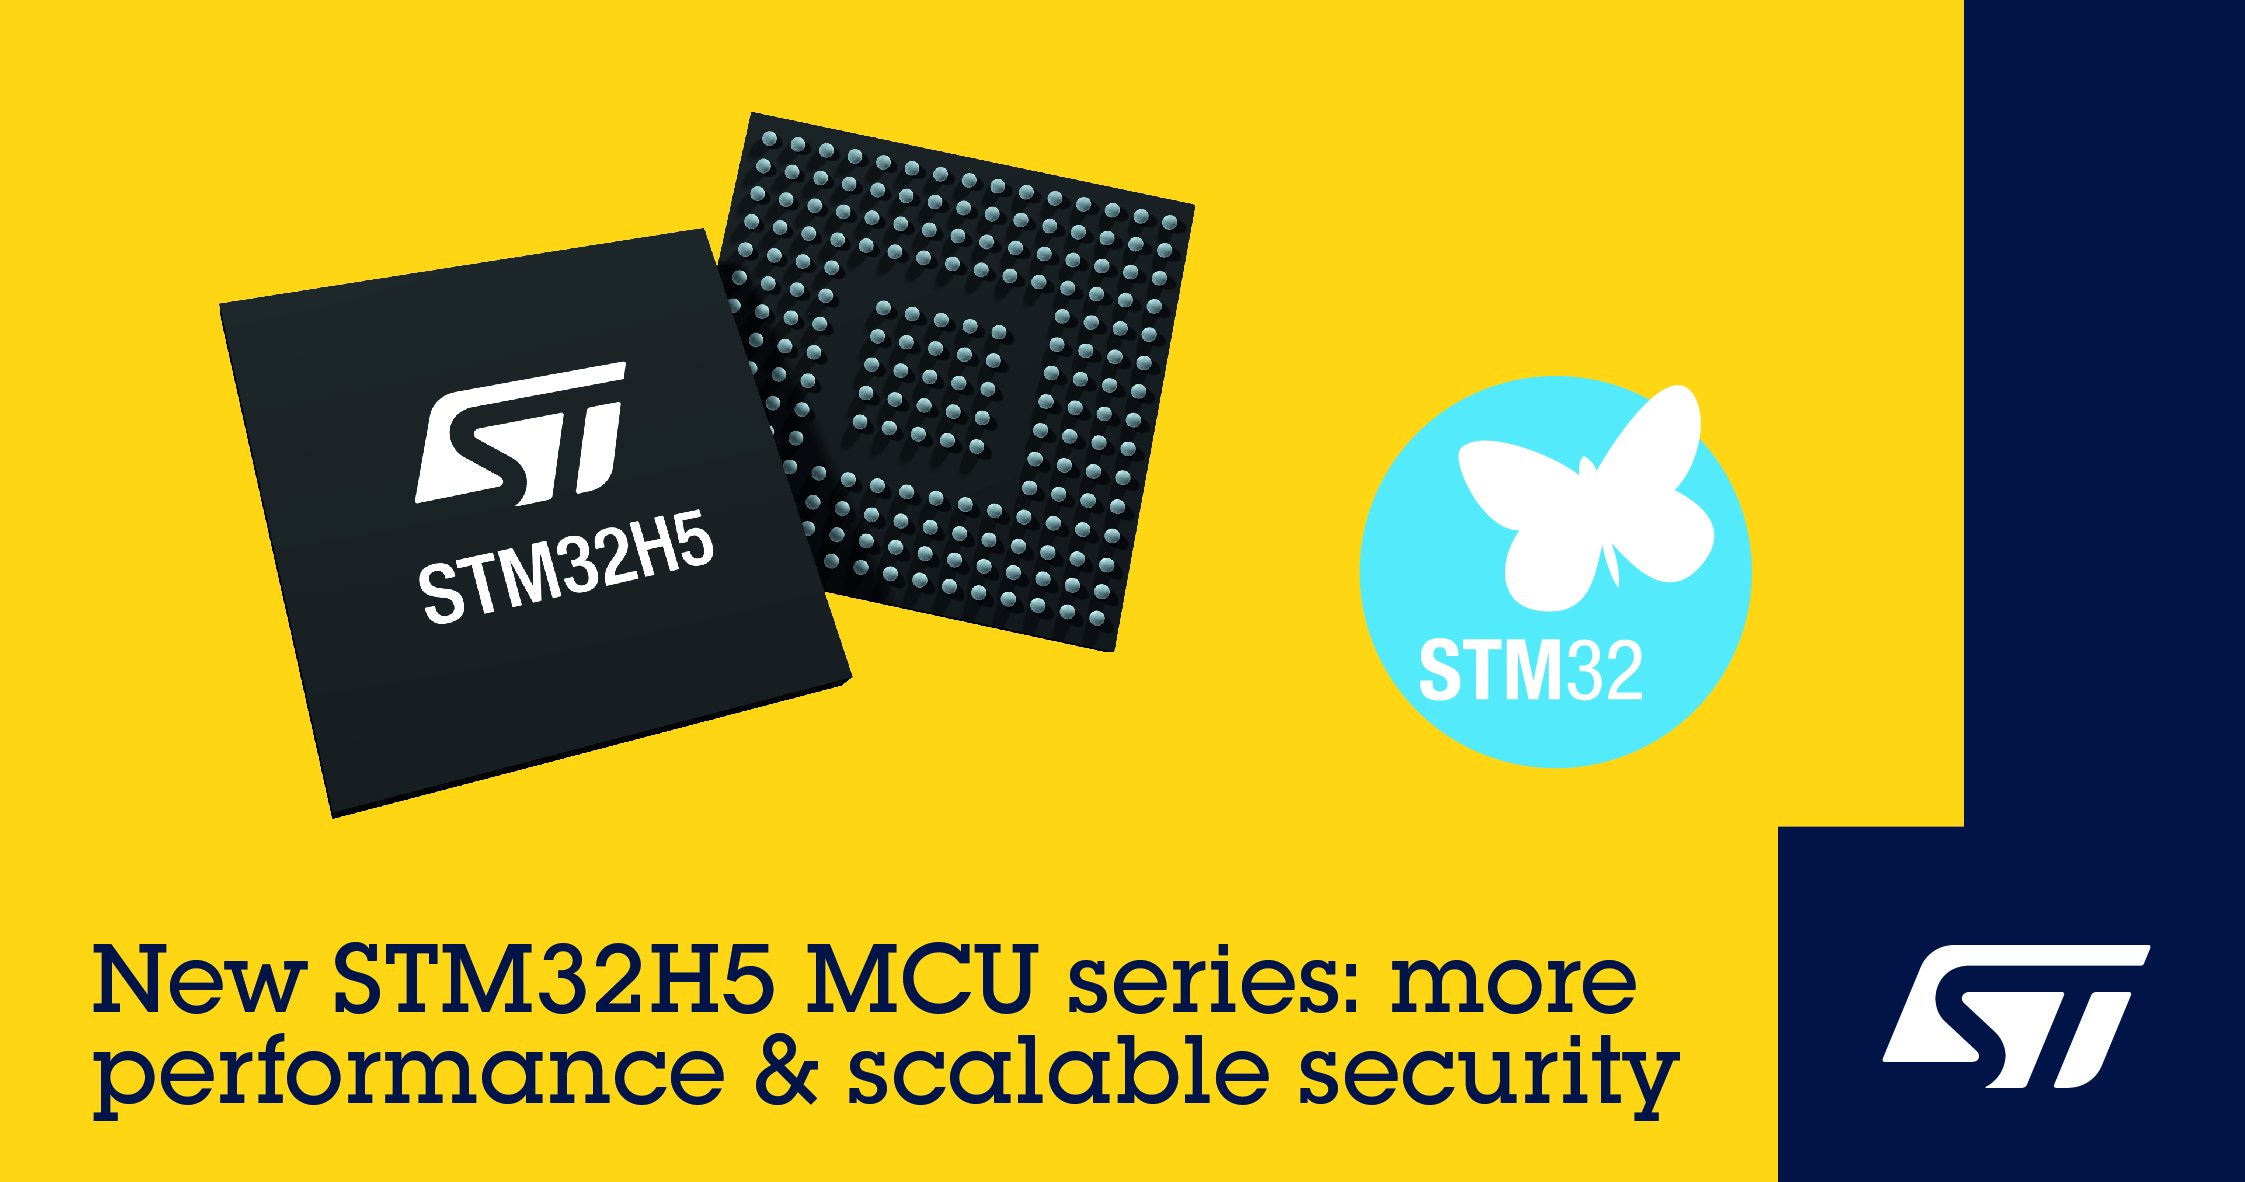 意法半导体新系列MCU STM32H5提升下一代智能应用的性能和安全性